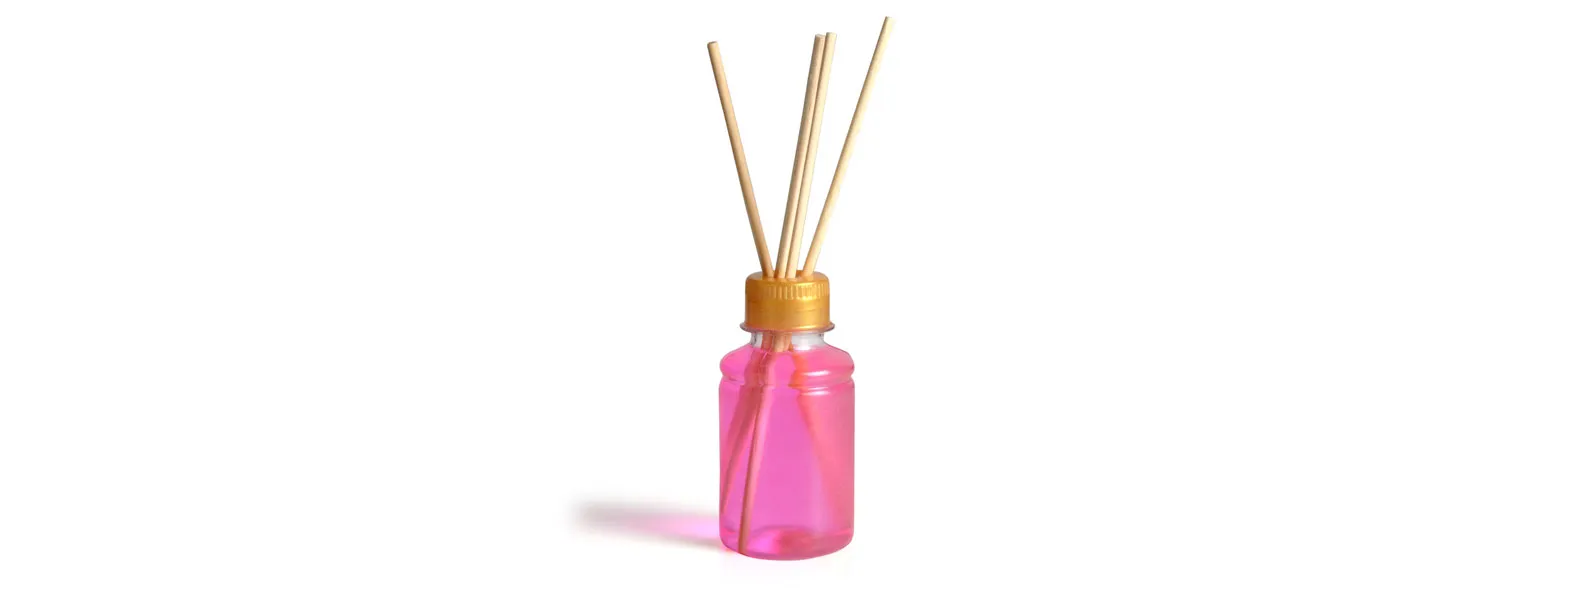 Kit para bandeja e aromatizador. Conta com bandeja redonda em bambu e aromatizador de ambiente com fragrância de orquídea.